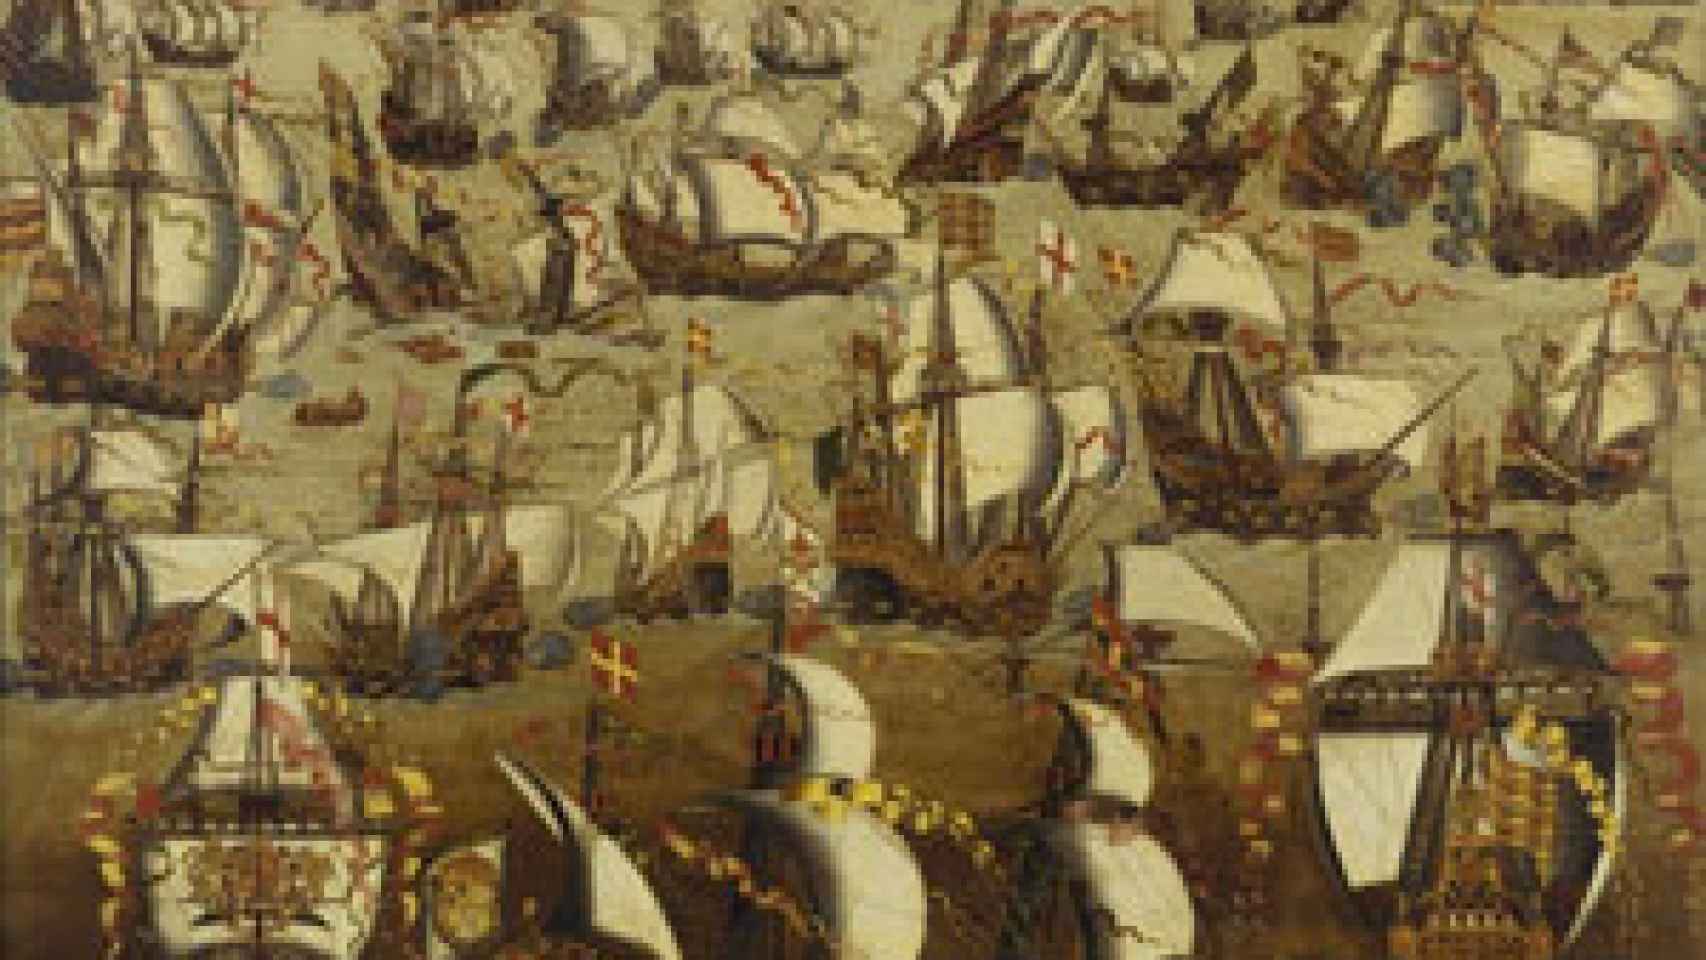 Image: Historia militar de España. Edad Moderna I. Ultramar y la Marina, tomo III